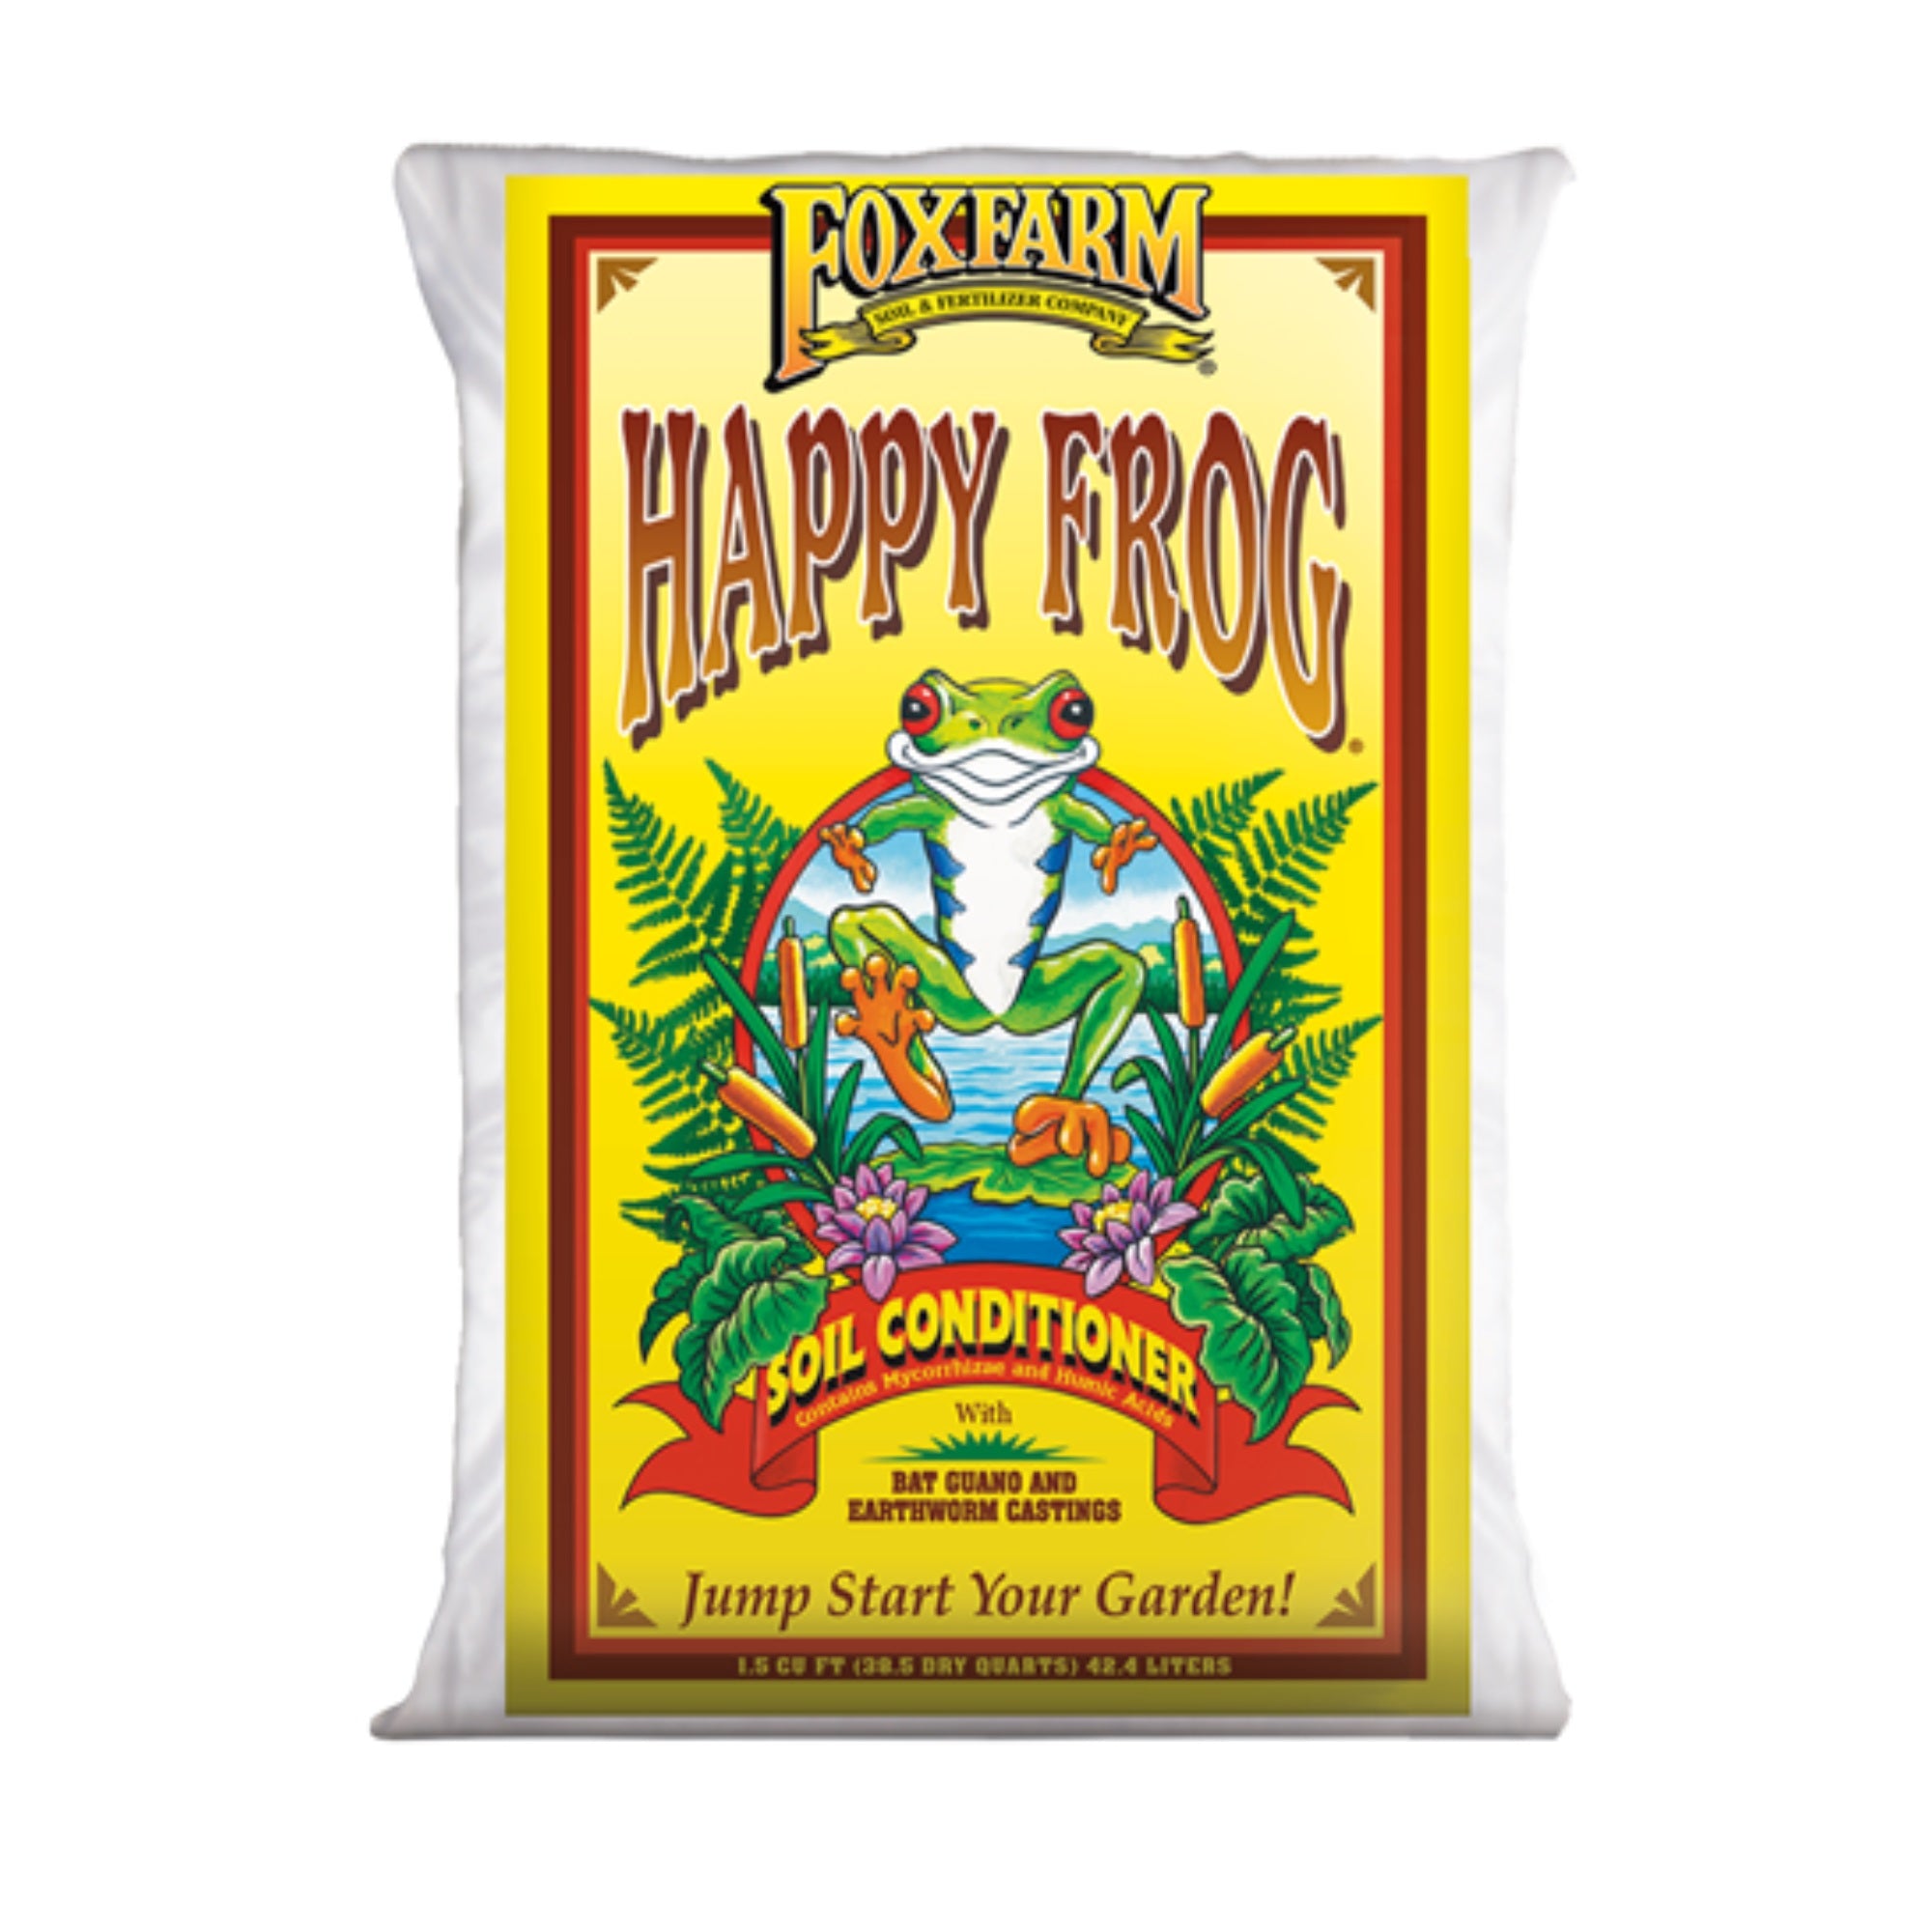 Foxfarm Happy Frog Soil Conditioner, 1.5 Cubic Feet